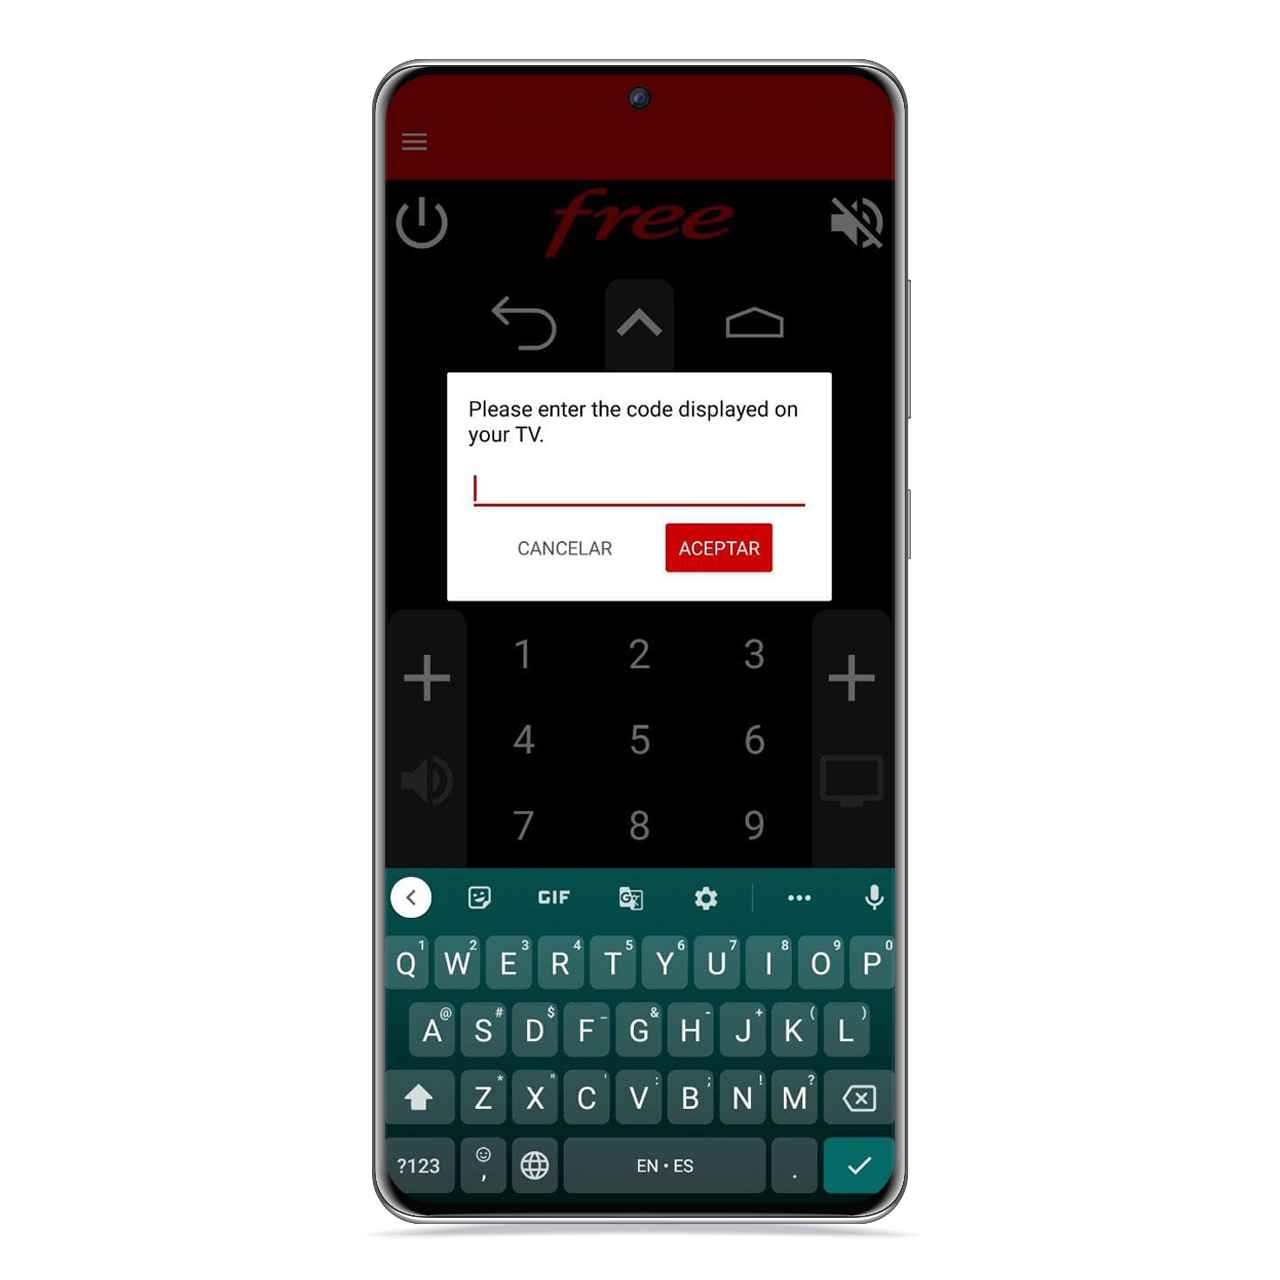 Freebox Remote, la app de mando necesitas tu Android